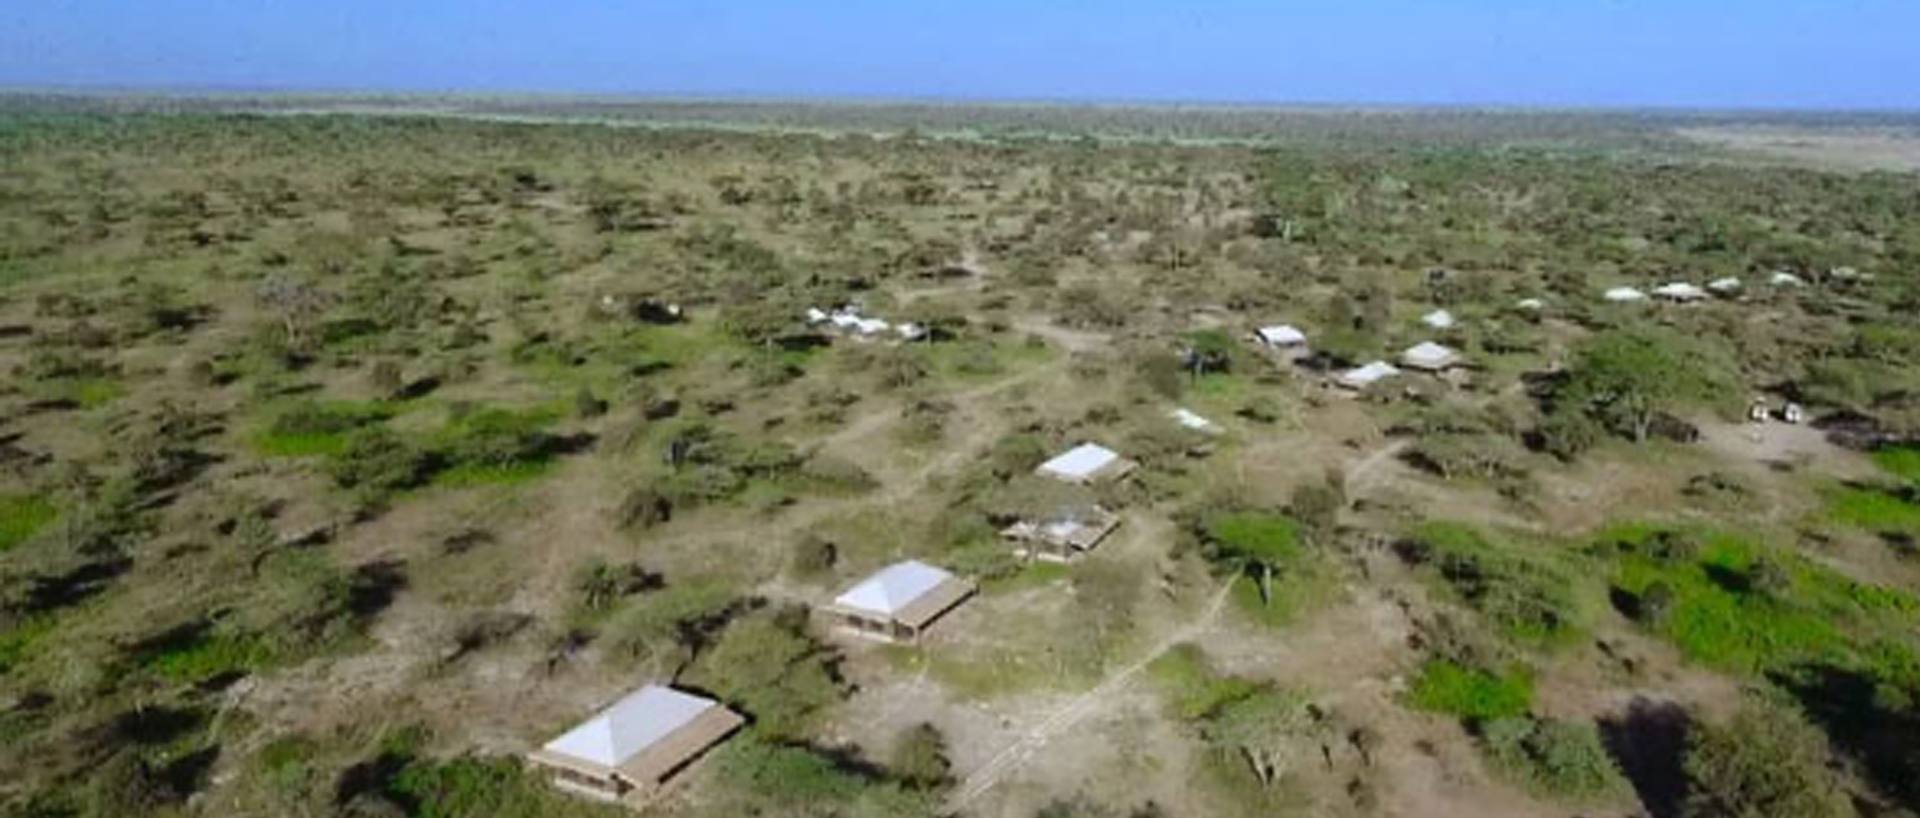 Tanzania Bush Ndutu Mobile Camp